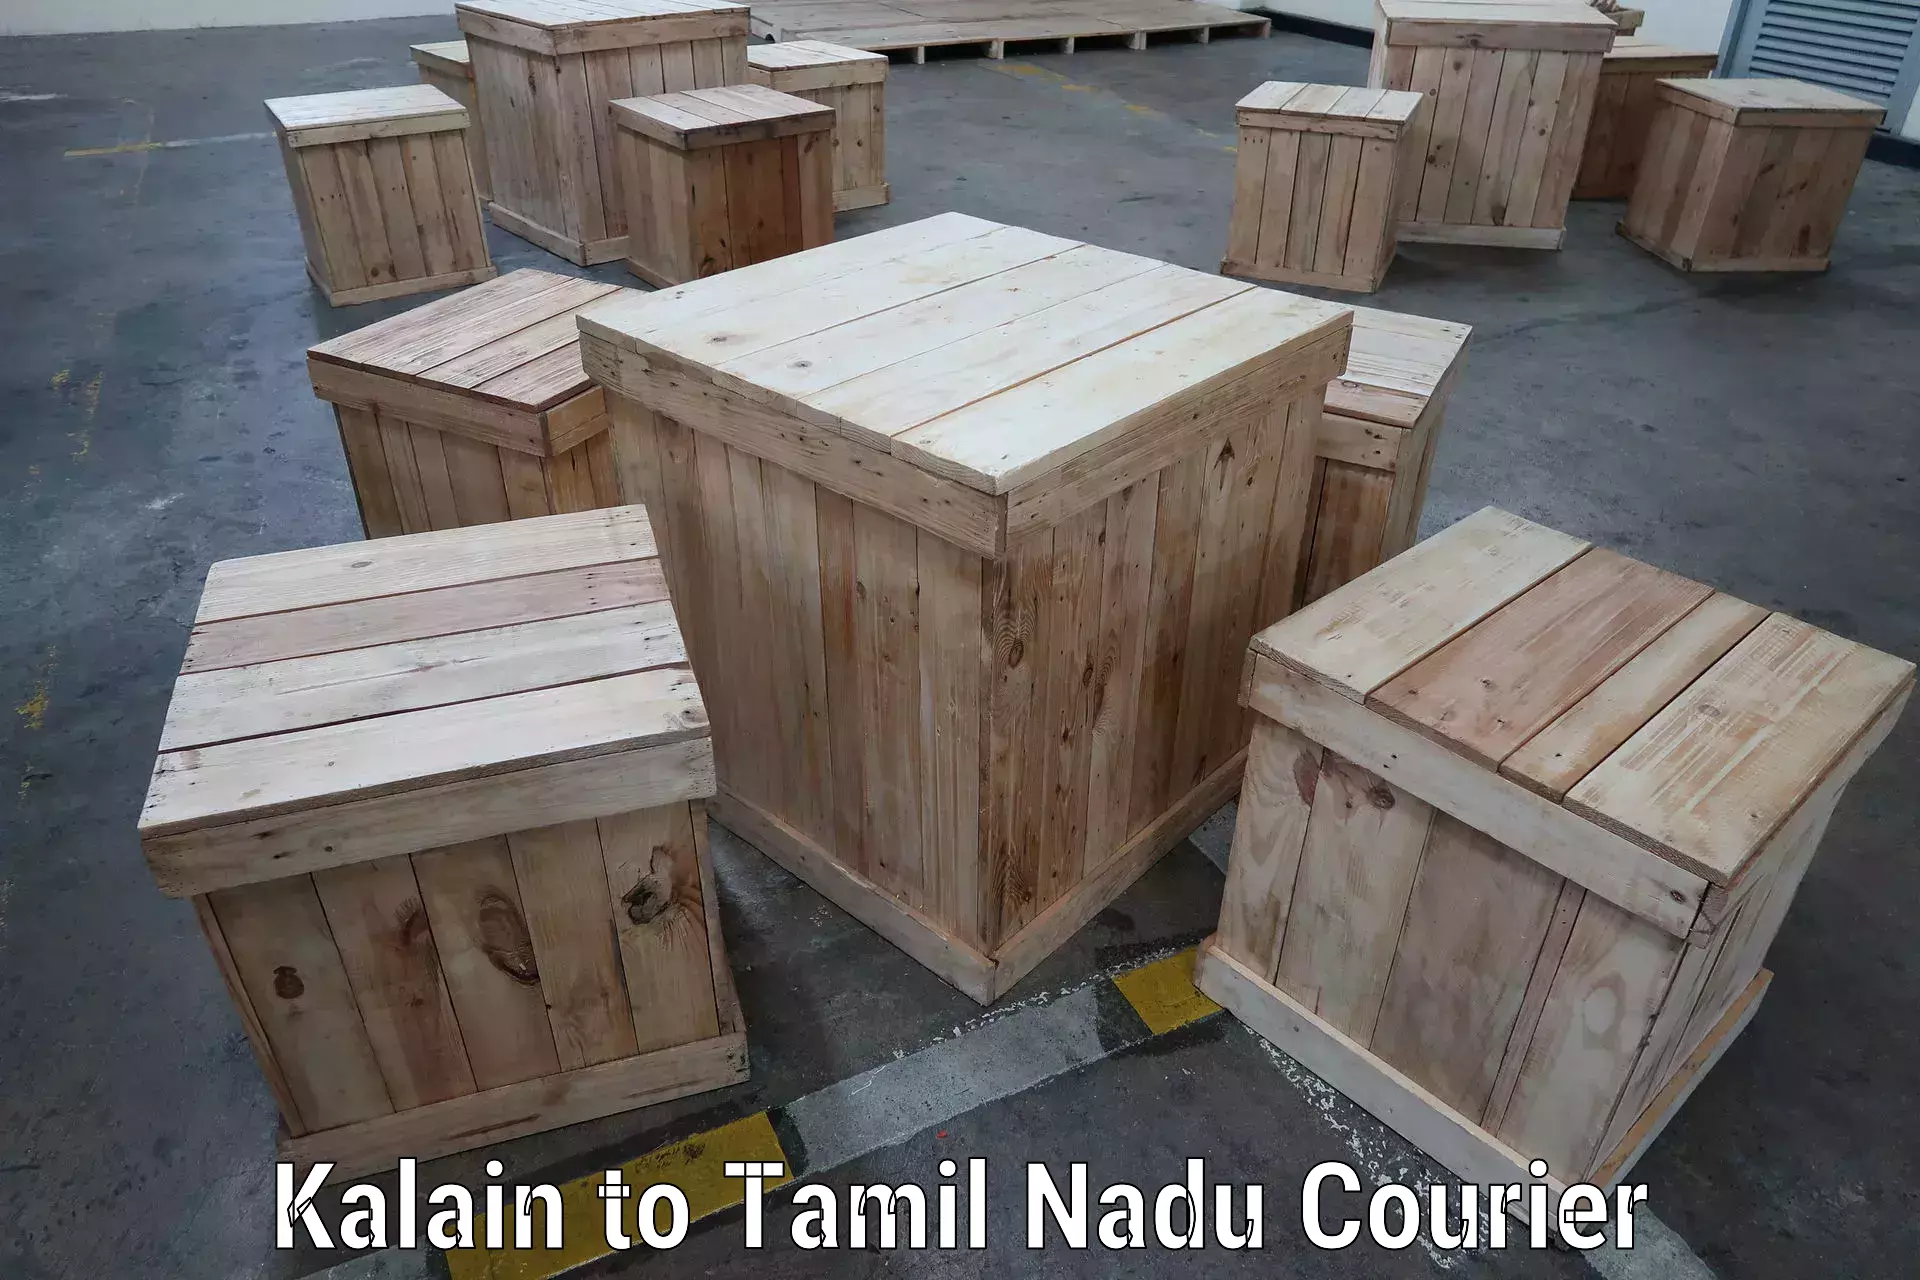 Express courier facilities Kalain to Tiruvannamalai